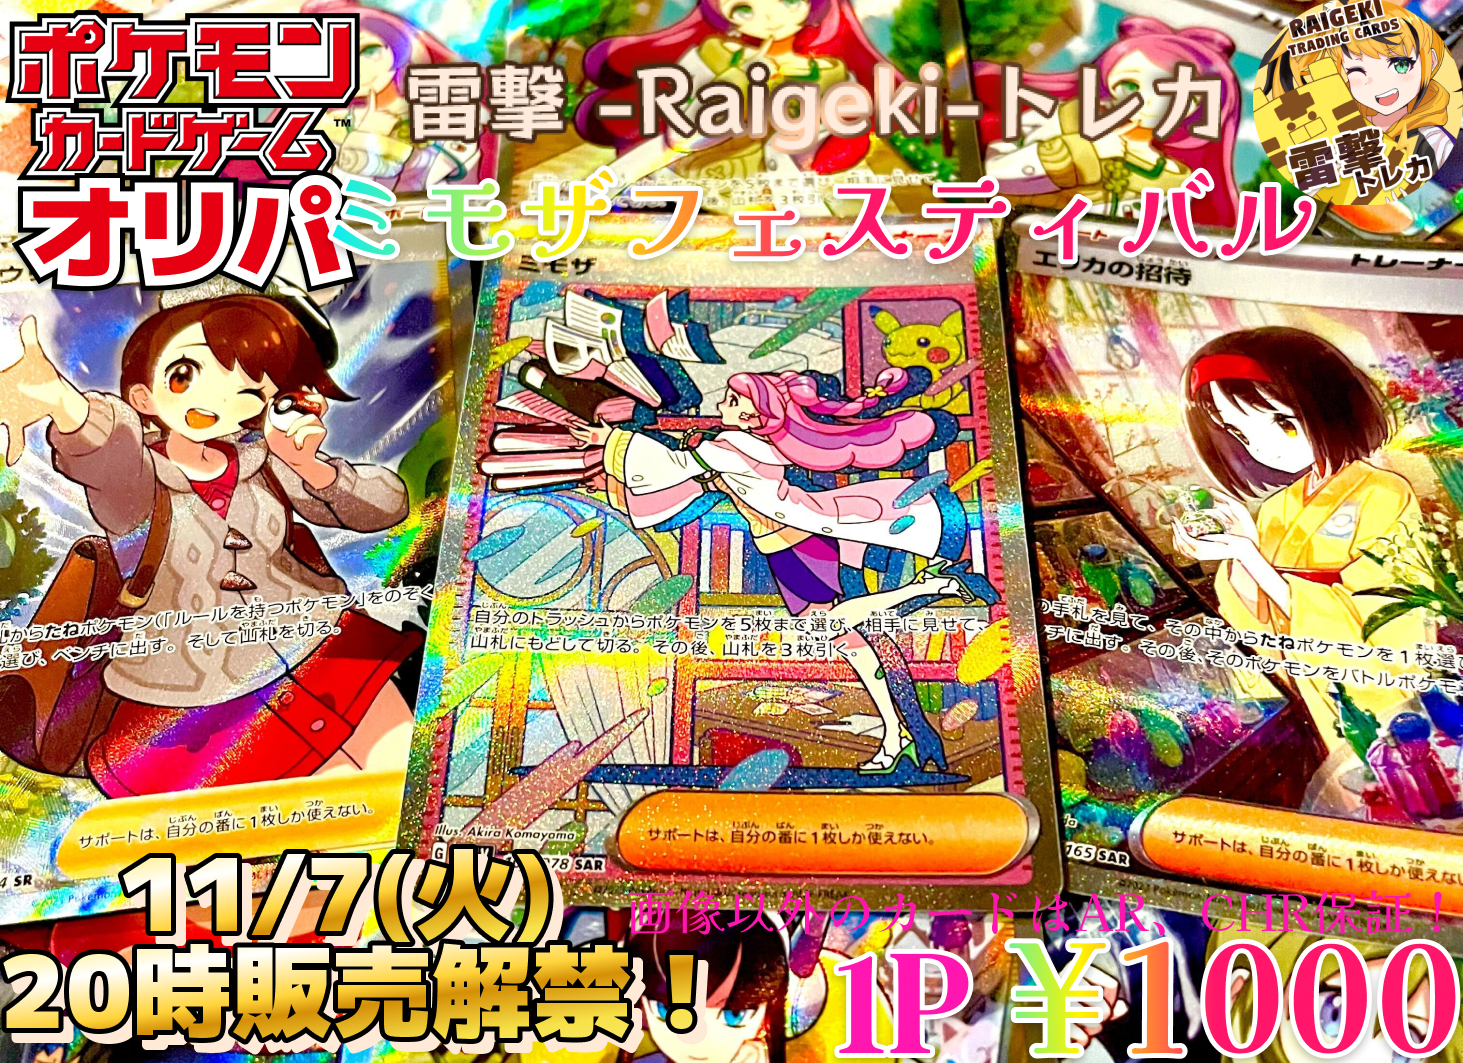 雷撃ポケモンカードオリパ『?ミモザフェスティバル?』 – 雷撃-Raigeki!-トレカ